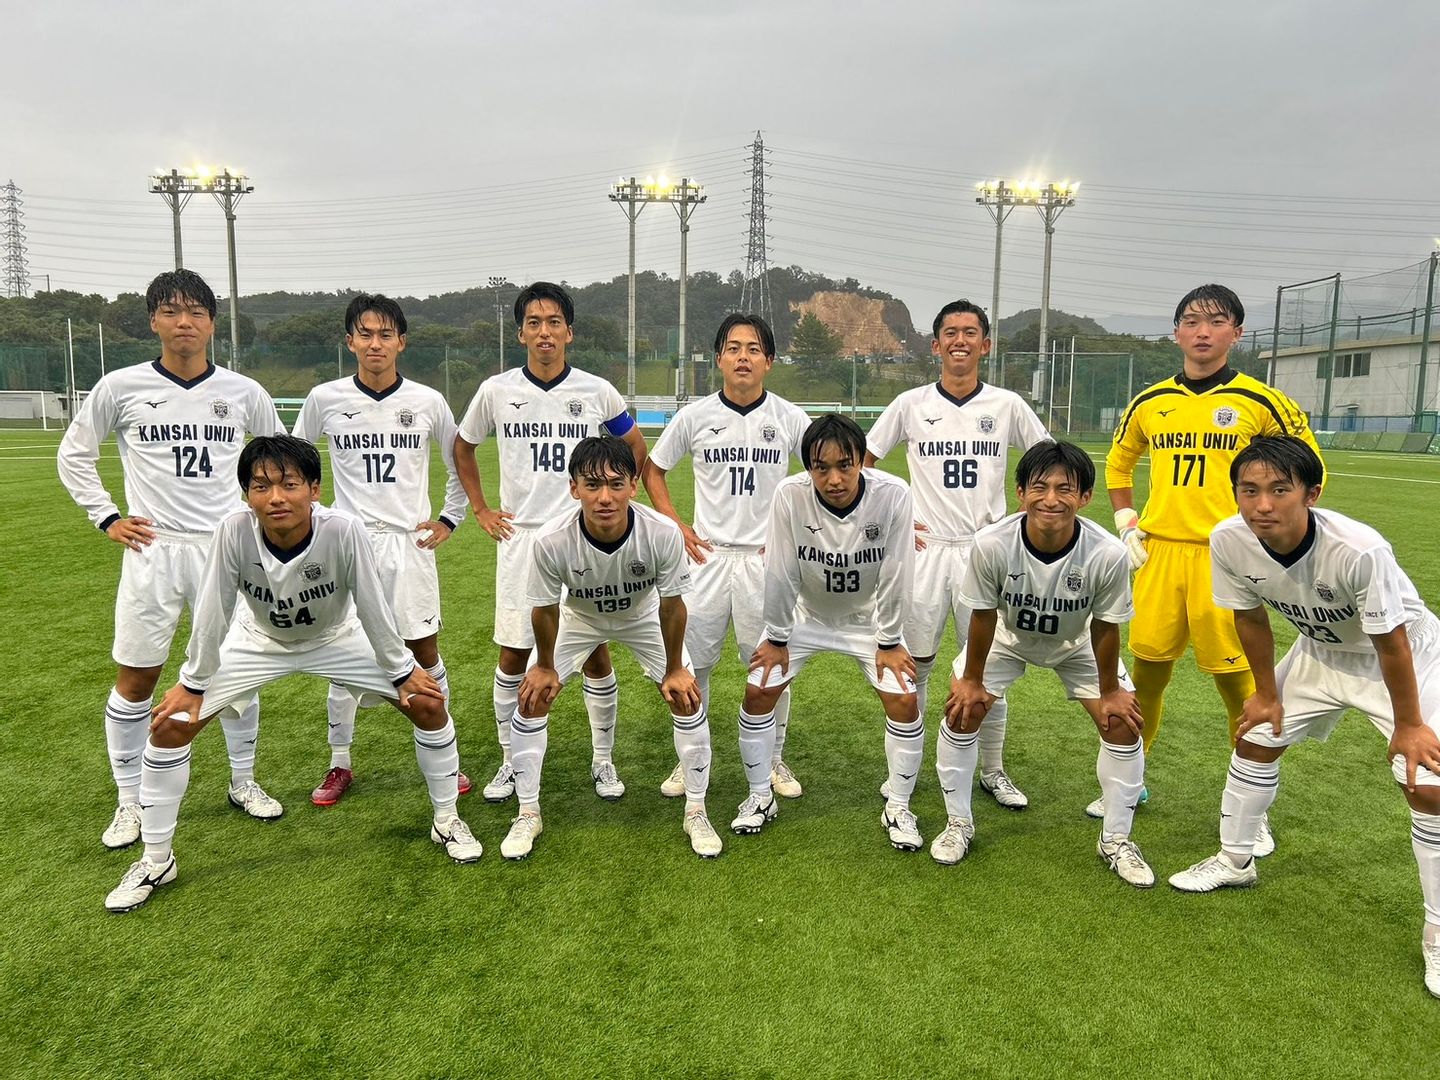 関西大学第一高等部サッカー部 関西大学体育会サッカー部公式ピステ 